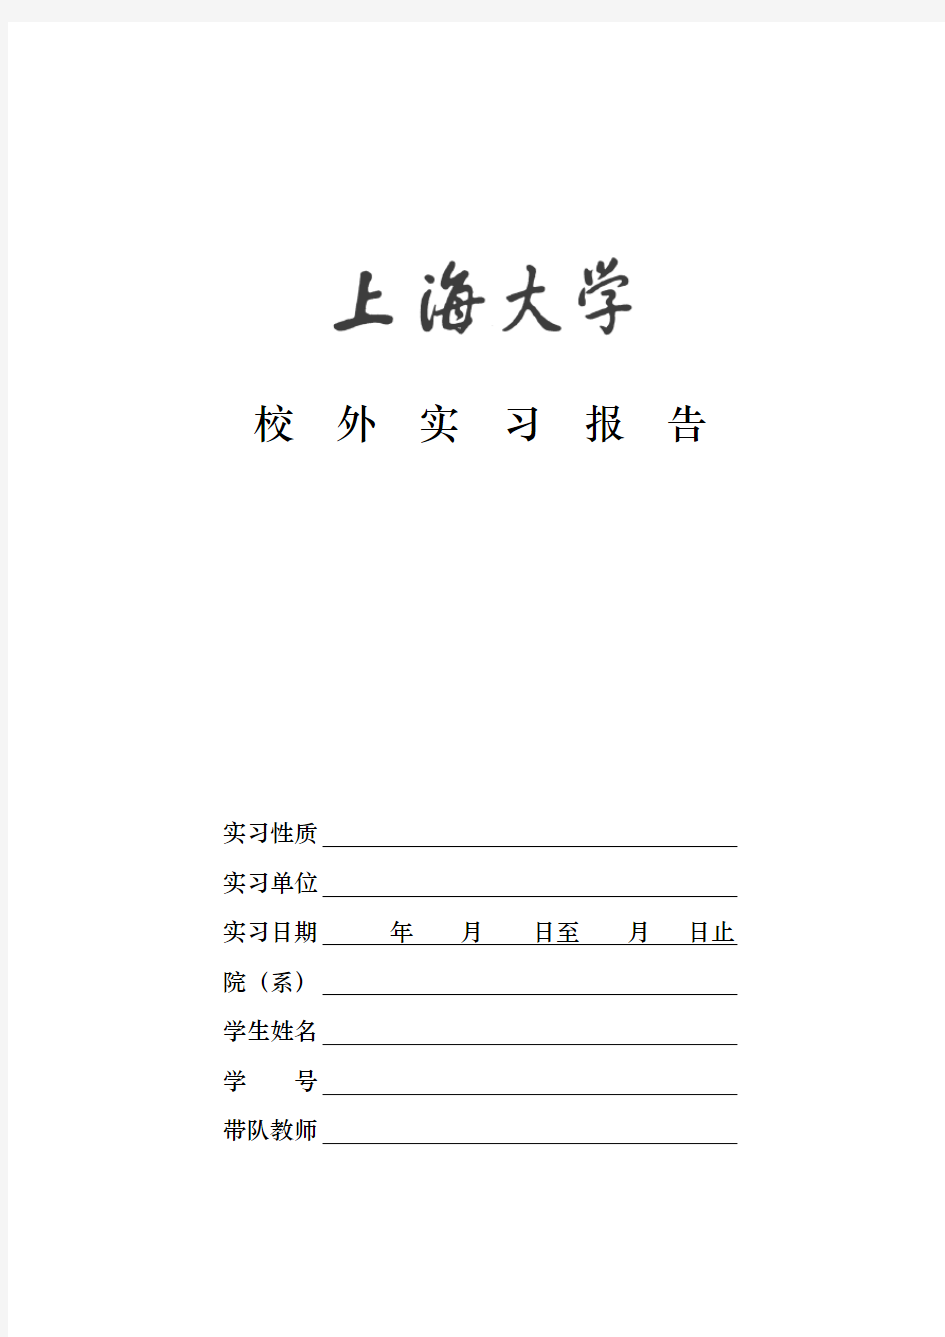 上海大学校外实习报告(电子版)